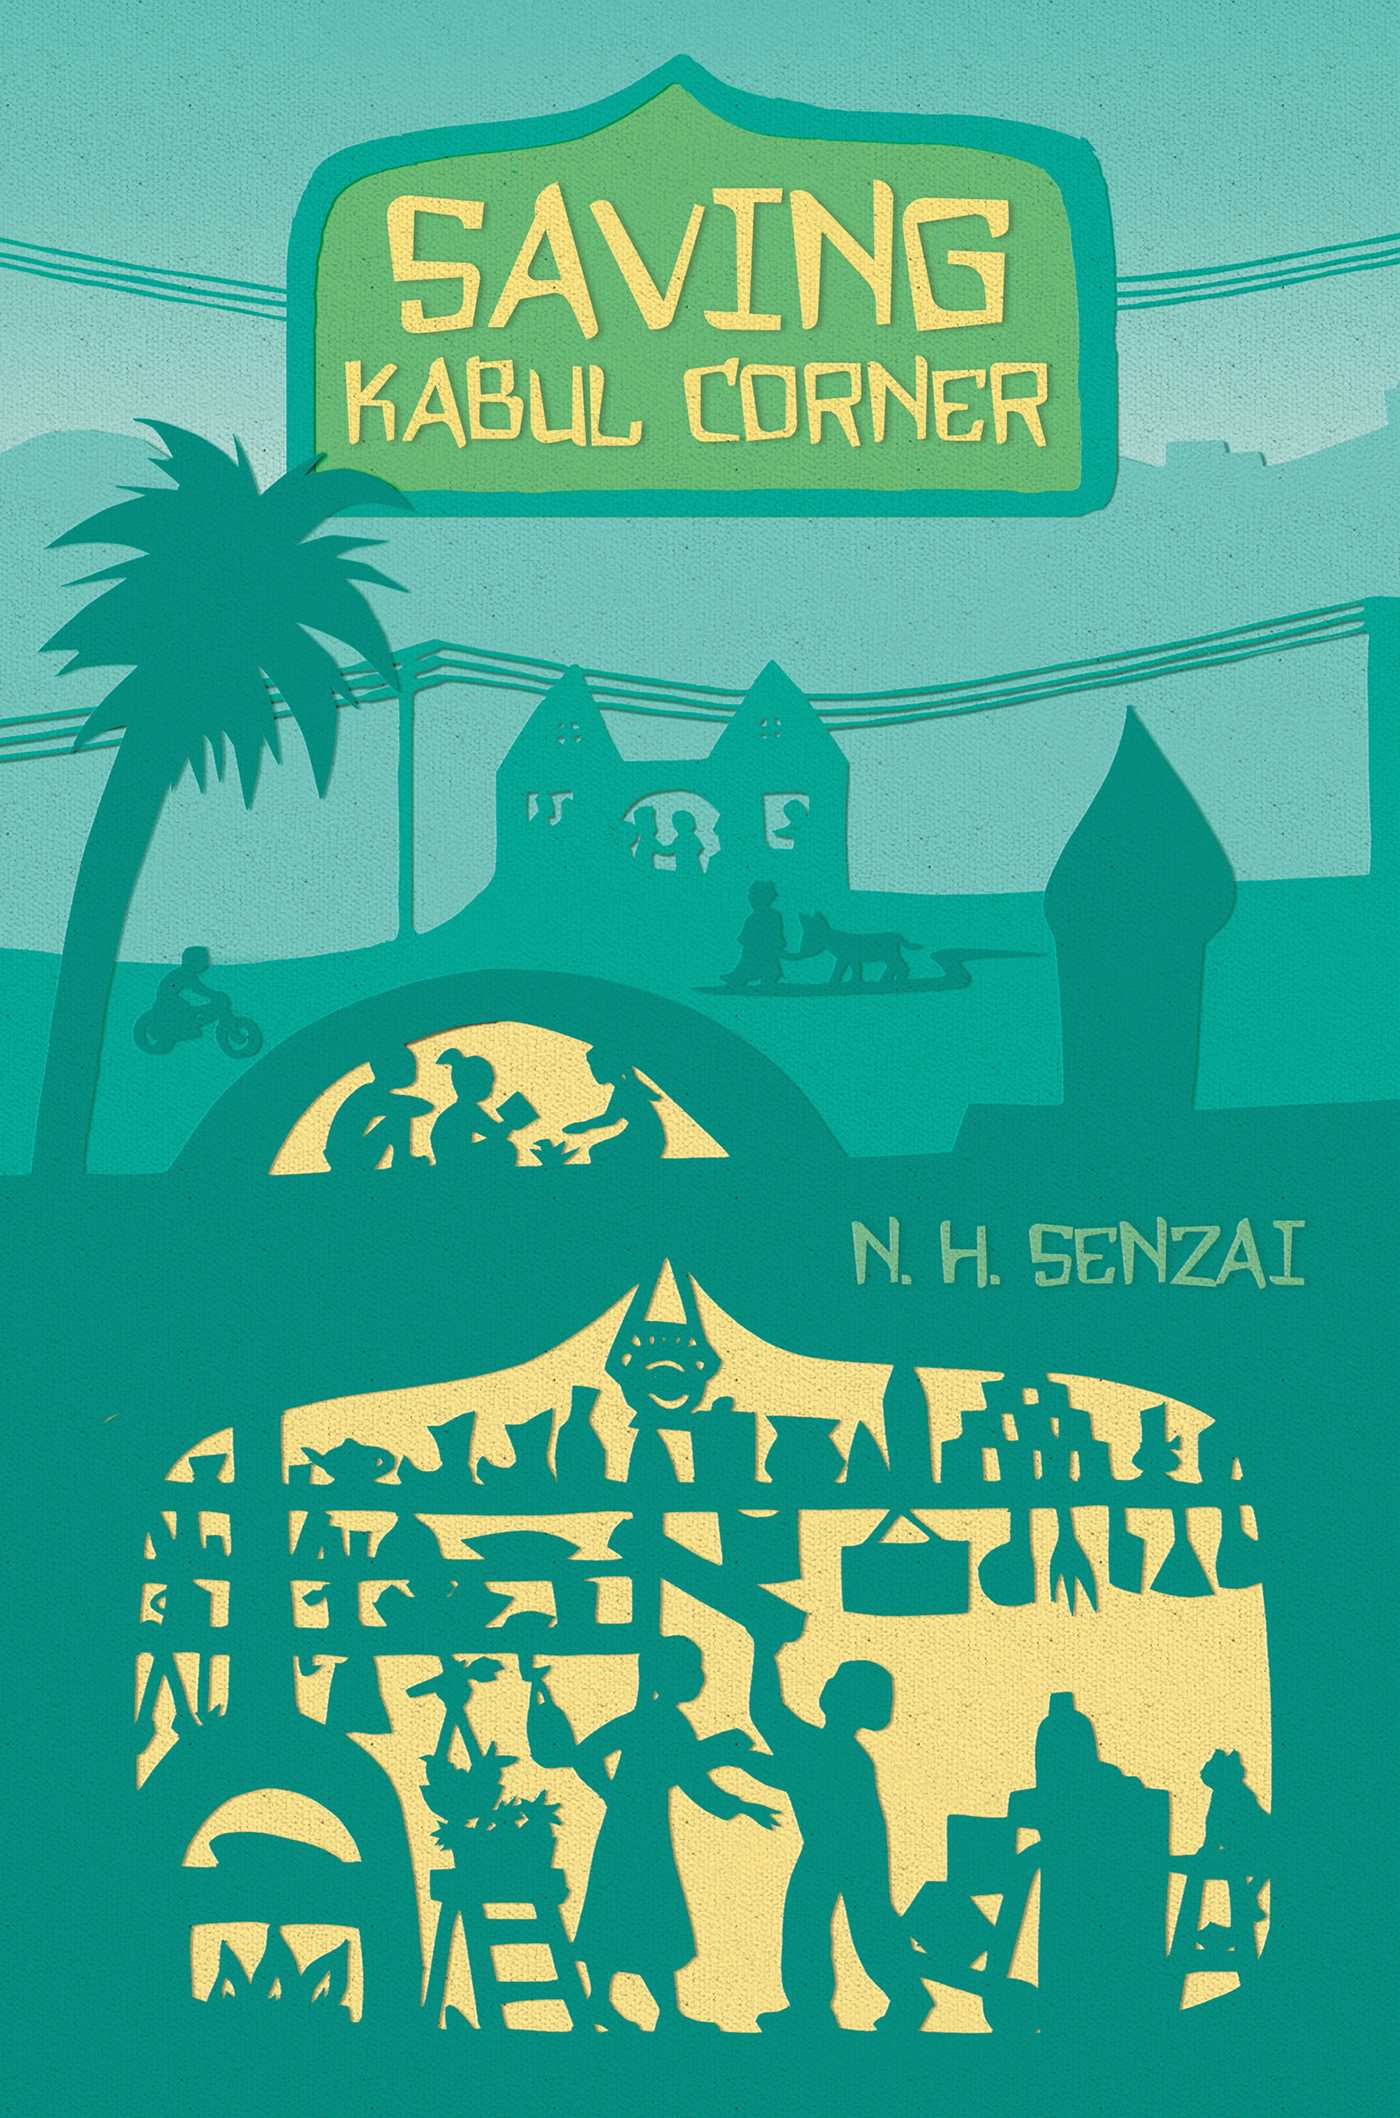 Saving Kabul Corner by N. H. Senzai